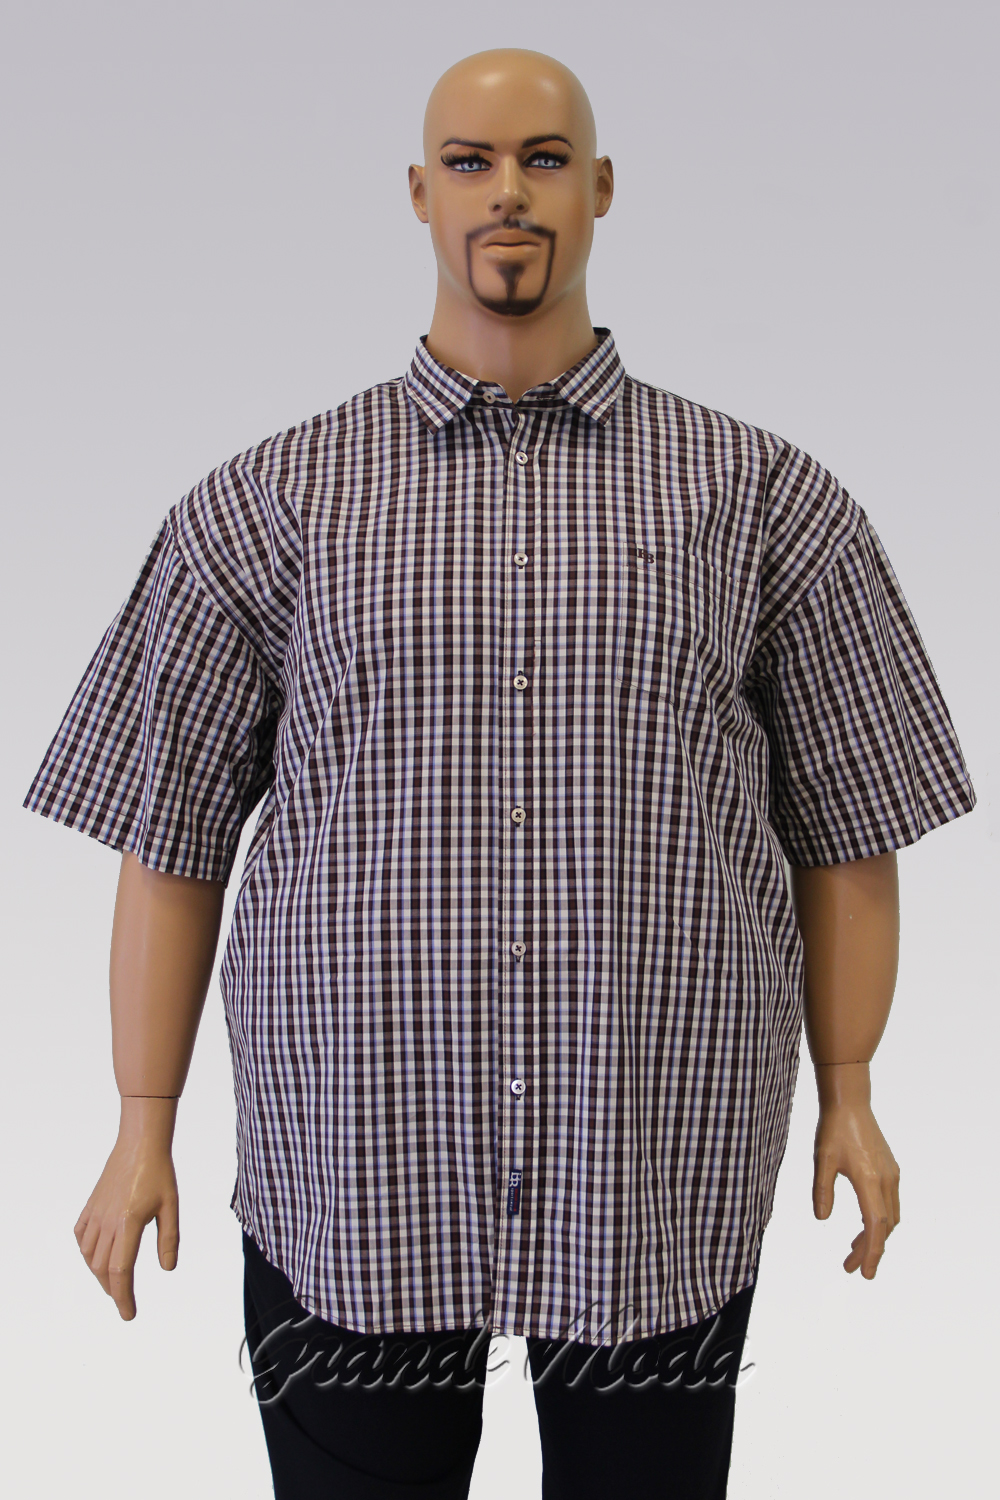 Одежда самого большого размера. Полный мужчина в рубашке. Мужские рубашки больших размеров. Рубашки для больших мужчин. Широкая рубашка мужская.